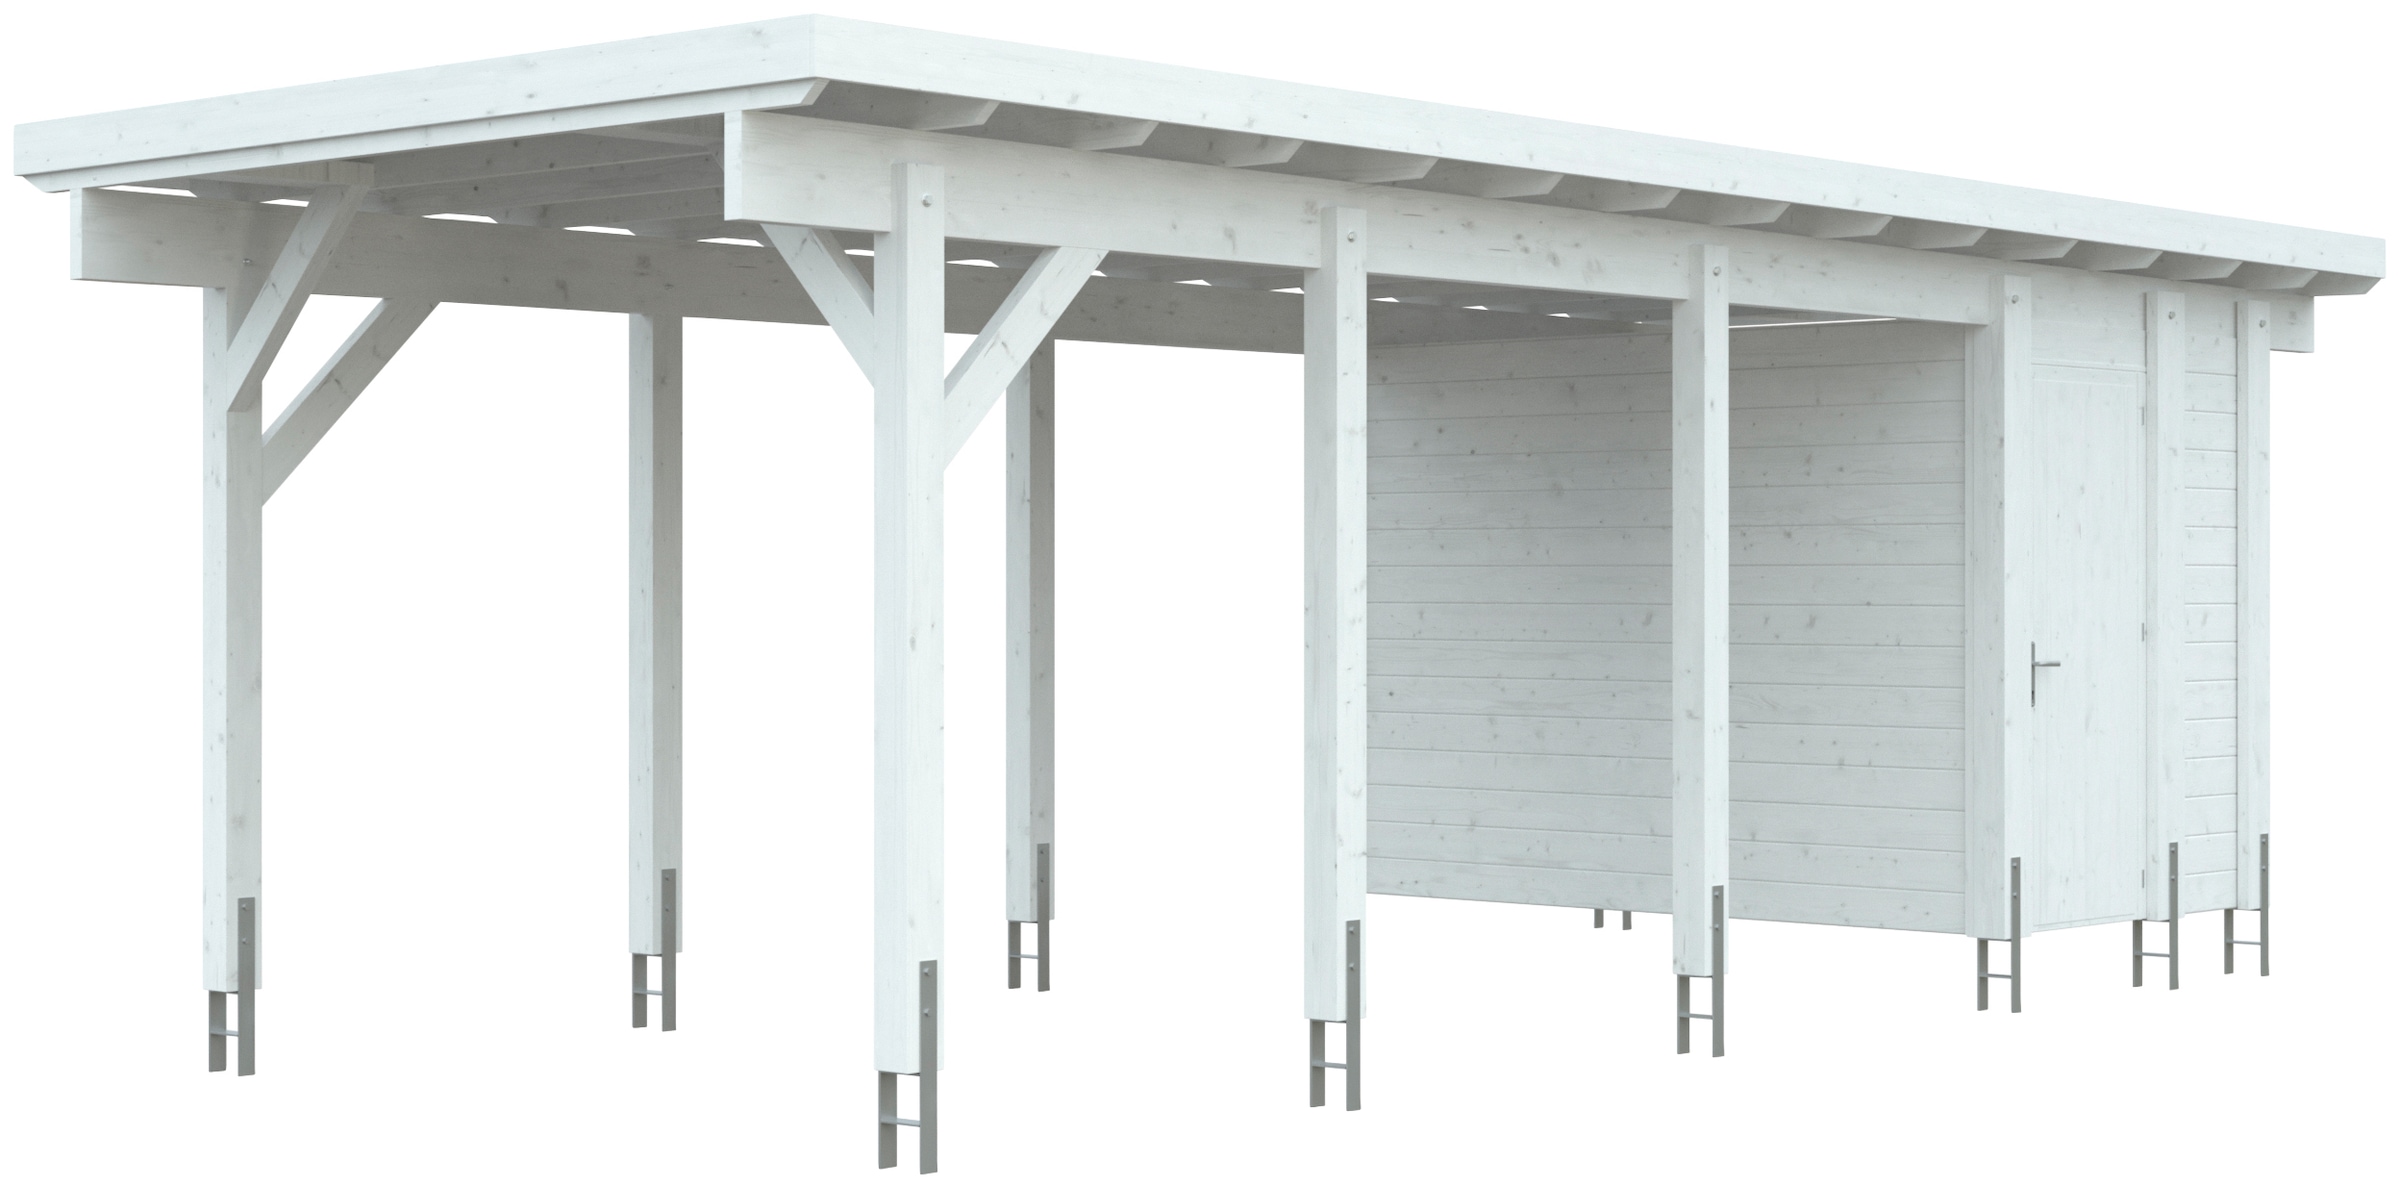 Kiehn-Holz Carport-Geräteraum, BxT: 299x174 cm, nur für Carport KH 320/321